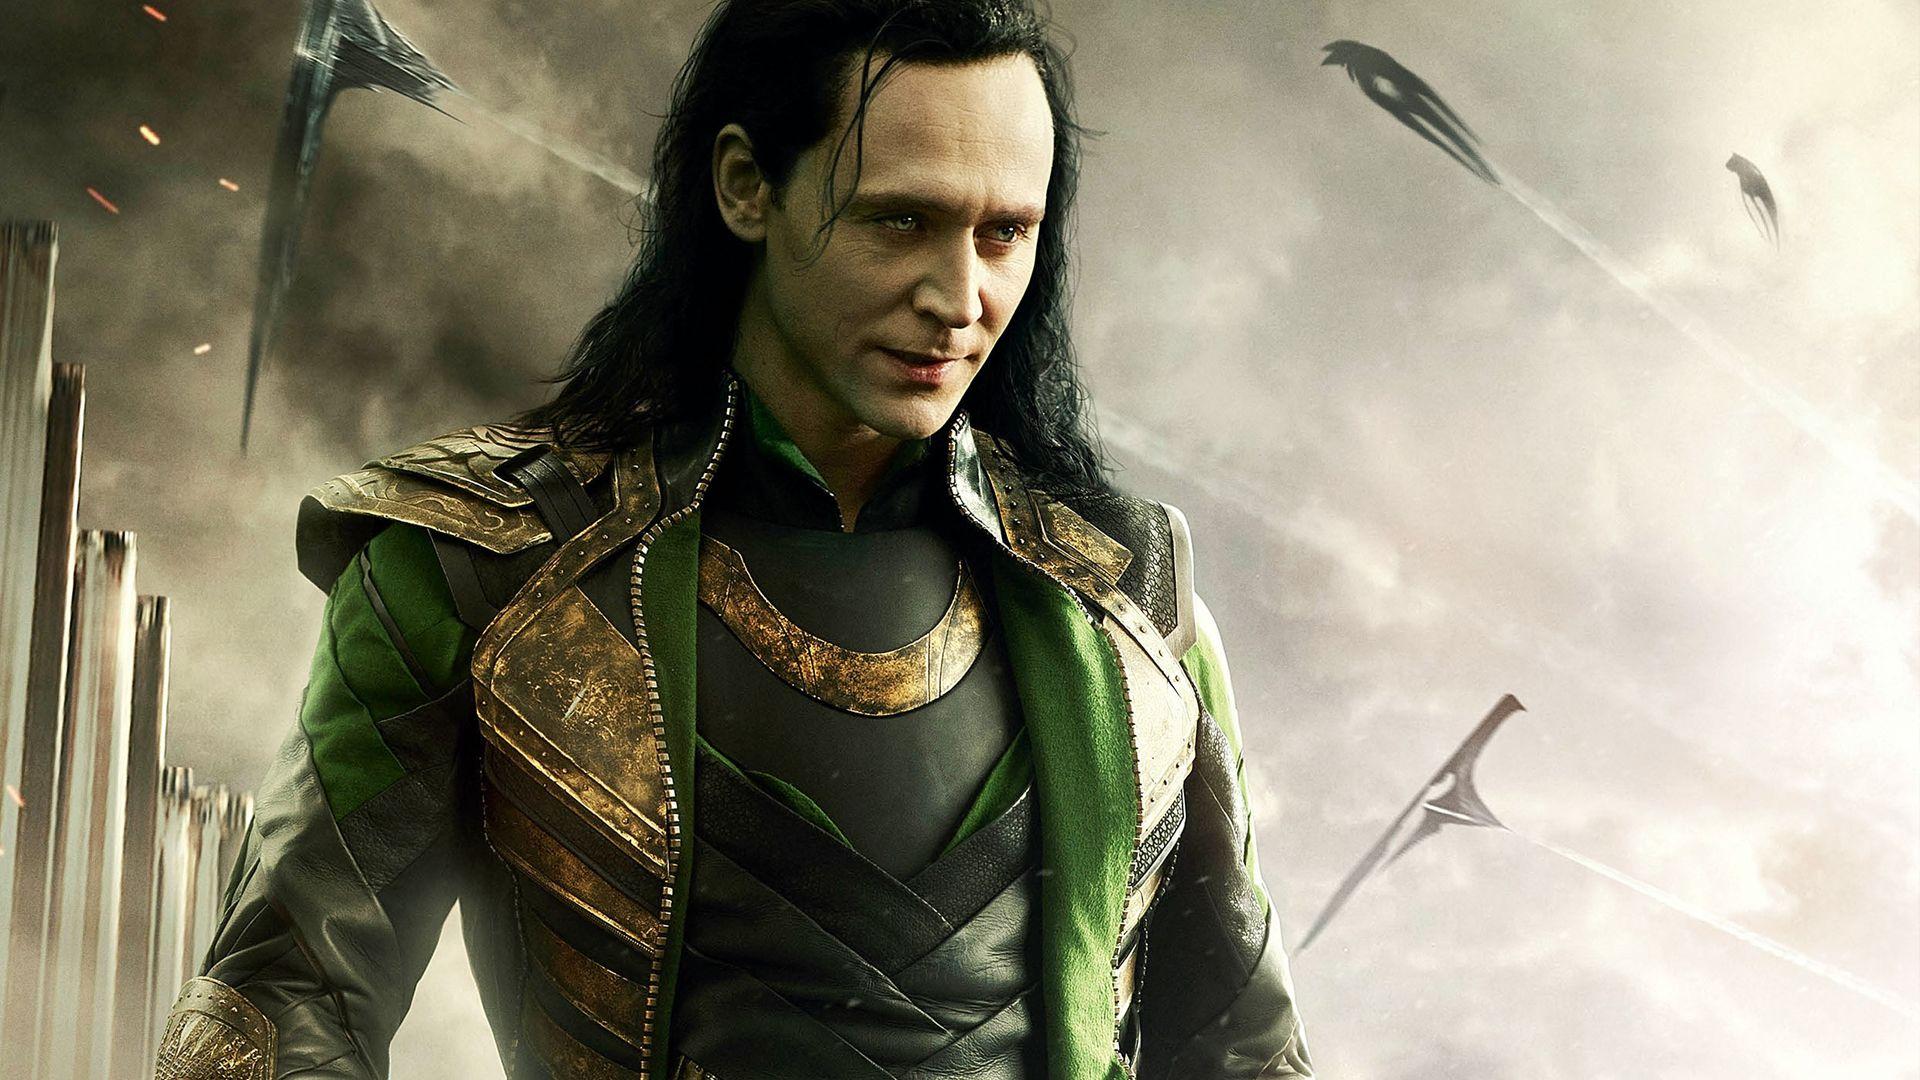 ThorRagnarok: Tom Hiddleston May Be Retiring As Loki After Thor 3